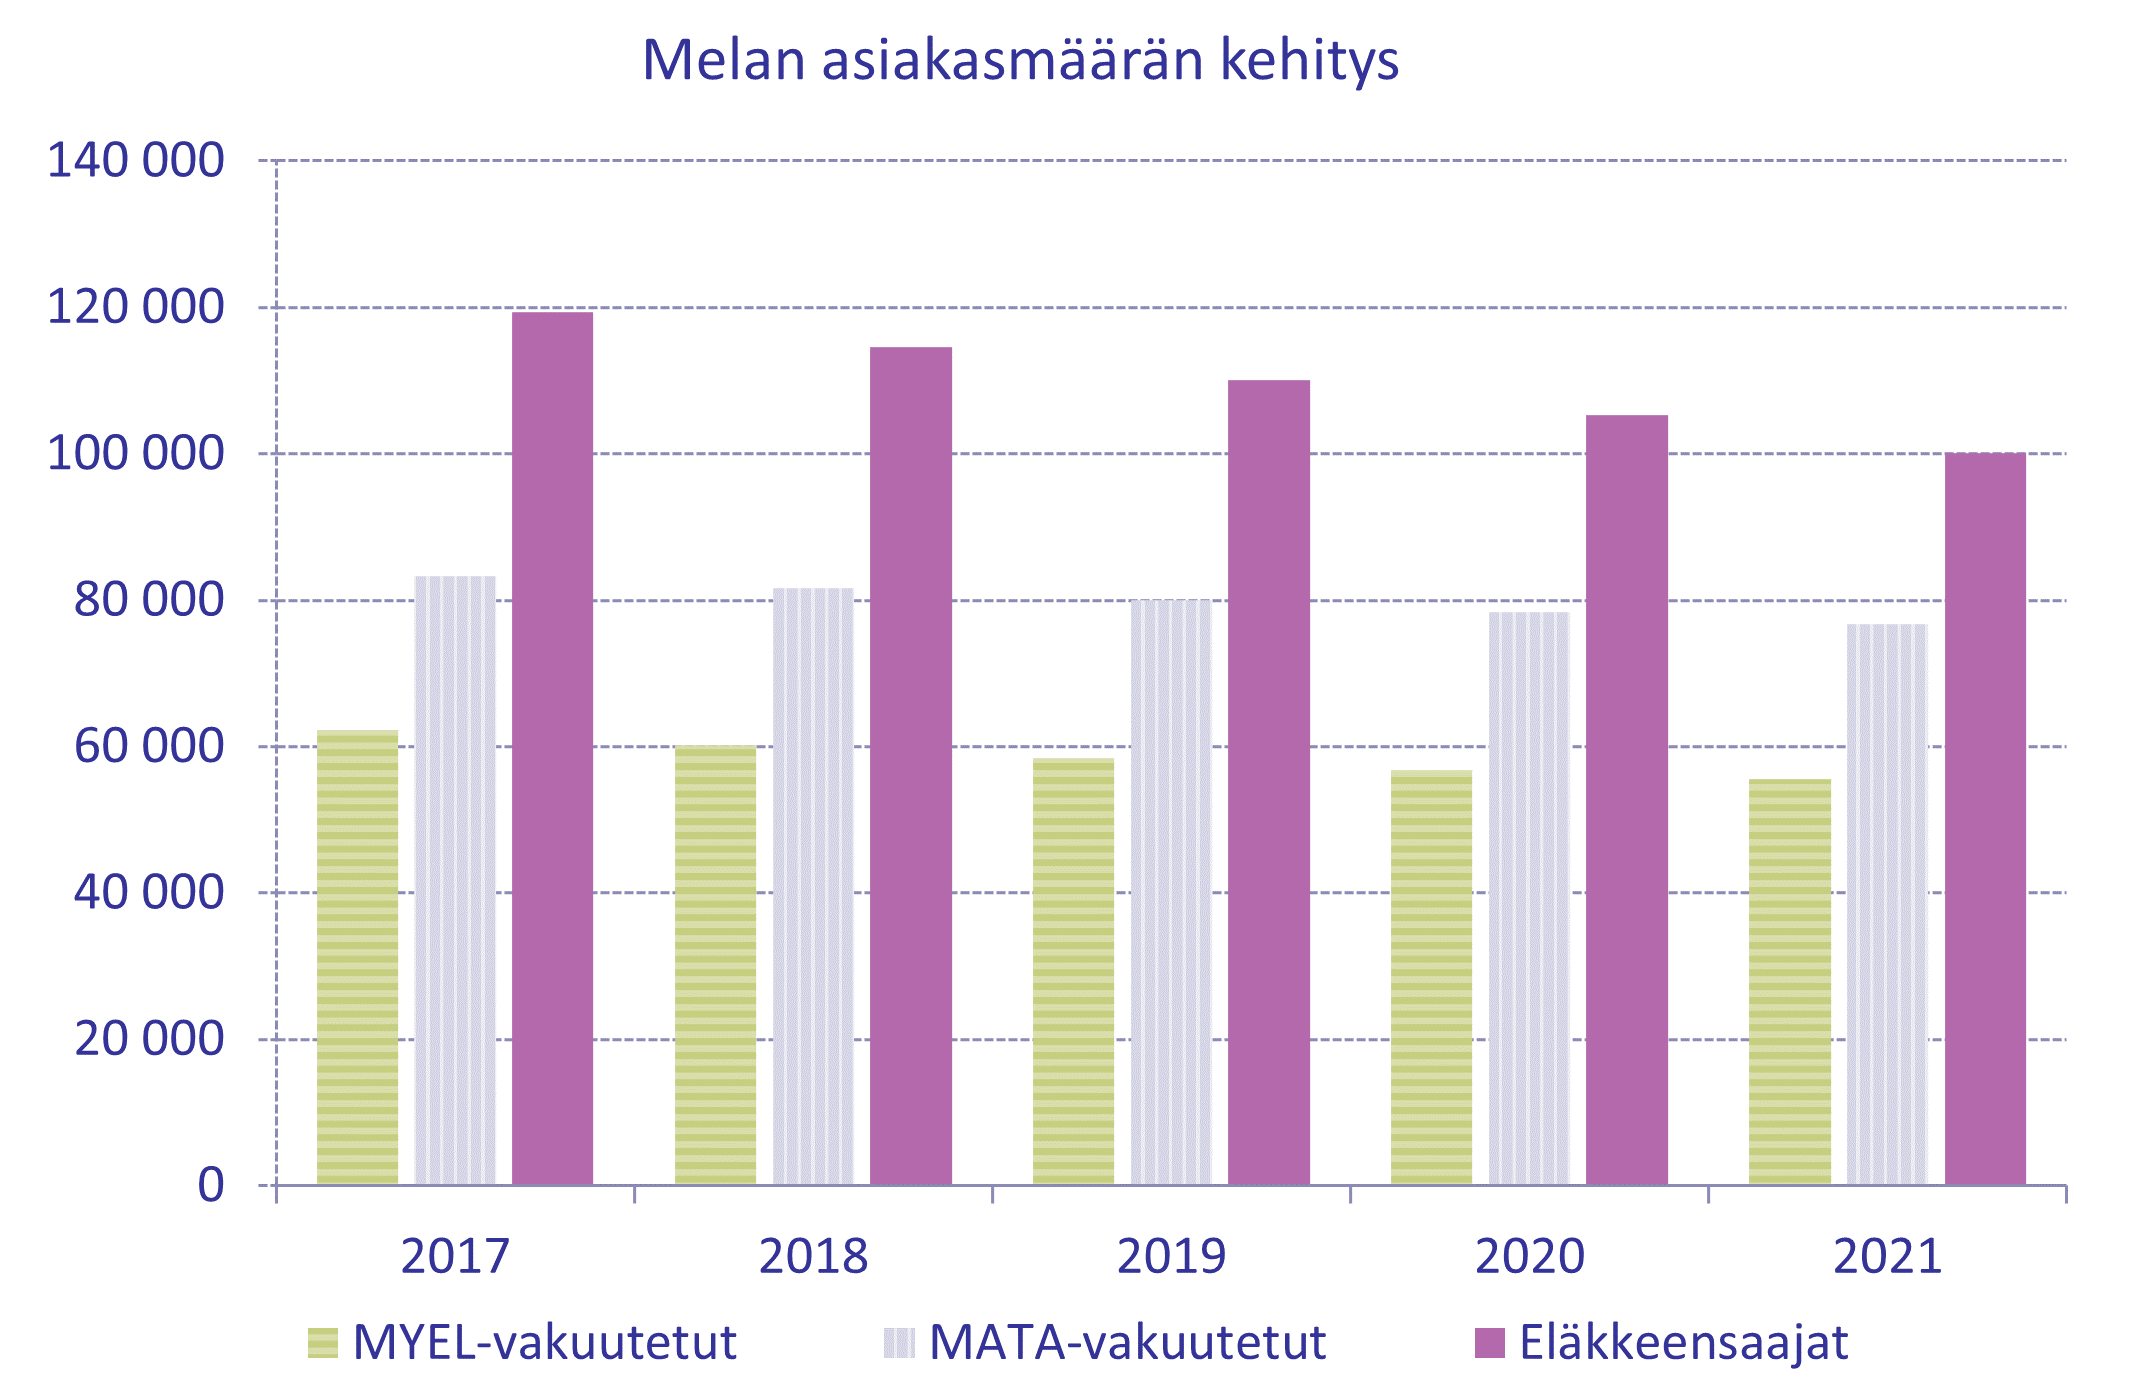 Kuvassa on asiakasmäärän kehitys vuosina 2017-2021. Asiakkaat on eroteltu kolmeen ryhmään: MYEL-vakuutettuihin, MATA-vakuutettuihin ja eläkkeensaajiin. Kuva osoittaa etenkin eläkkeensaajien määrän vähenemisen.